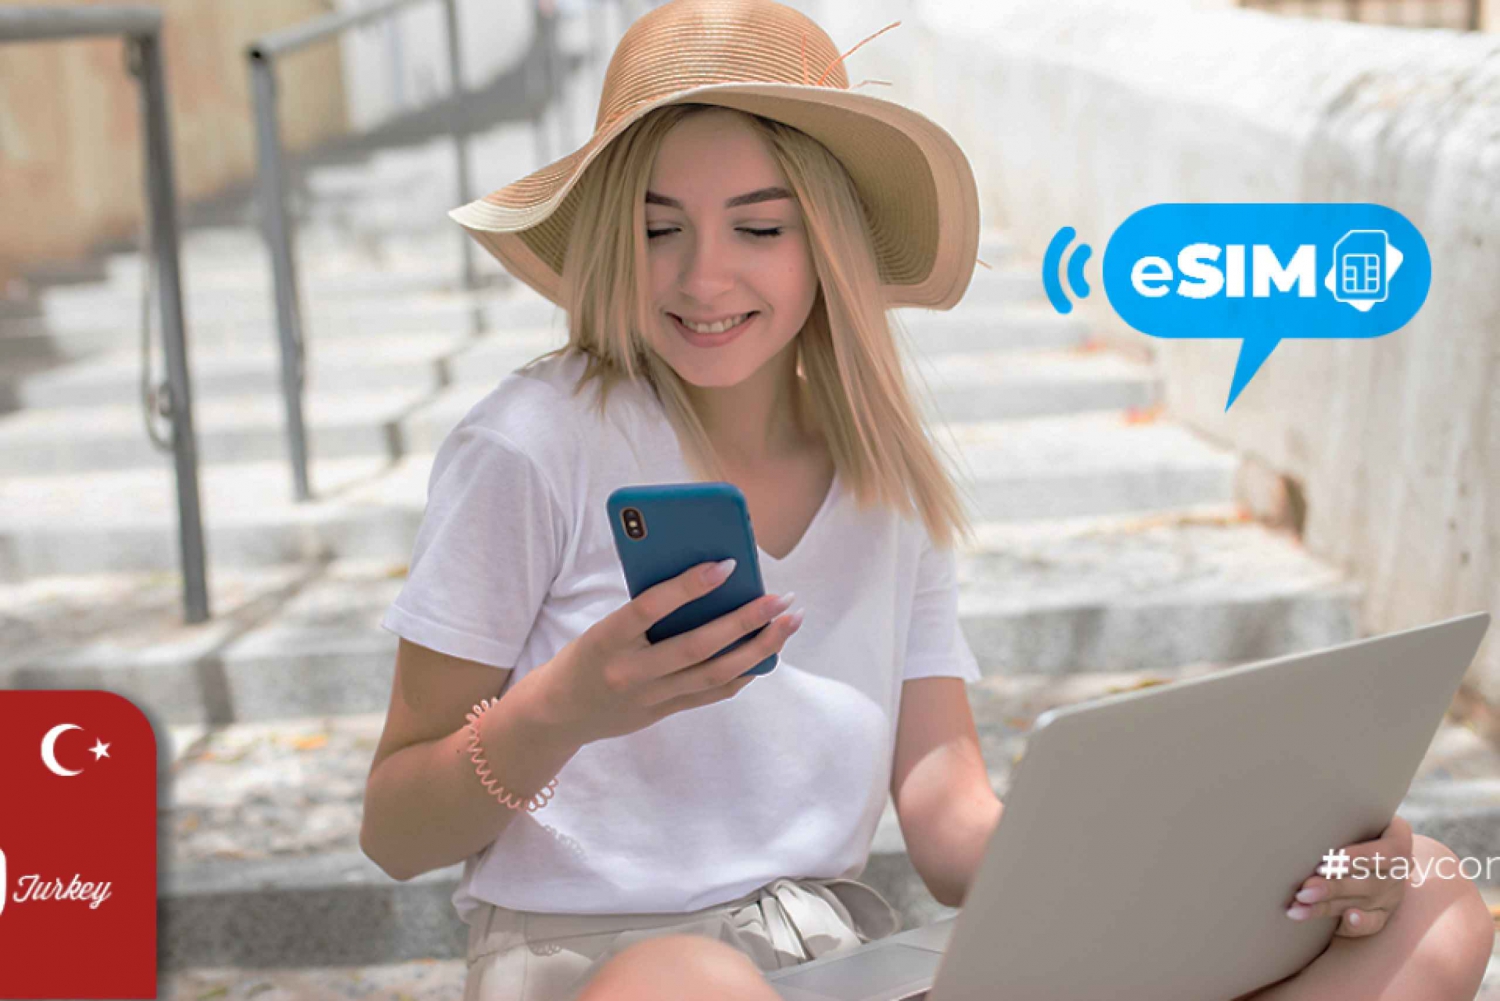 Esmirna / Turquía: Internet en itinerancia con datos móviles eSIM